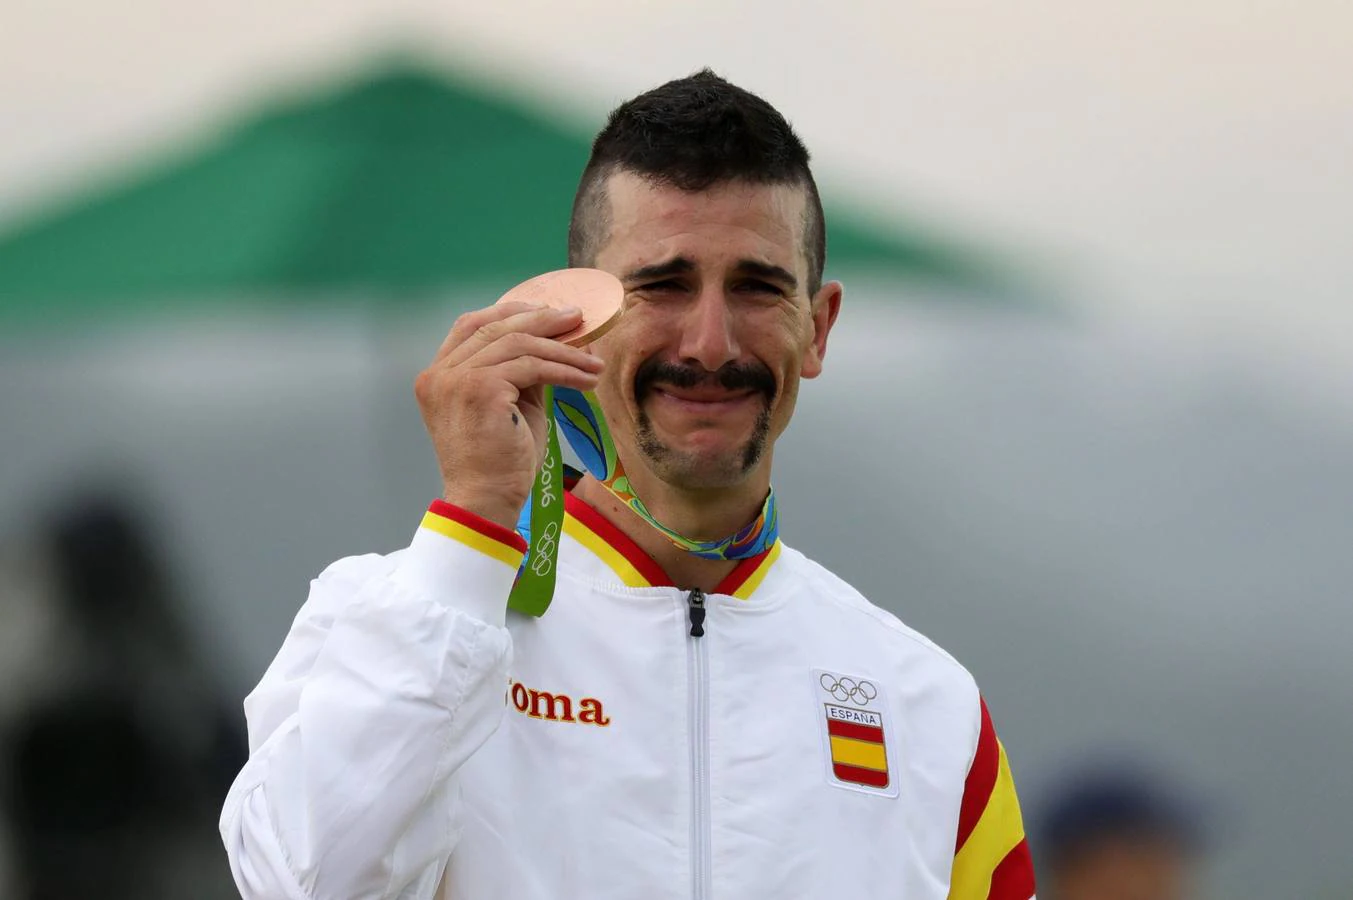 El medallista olímpico Carlos Coloma ganó el bronce para España en la competencia de mountaon bike